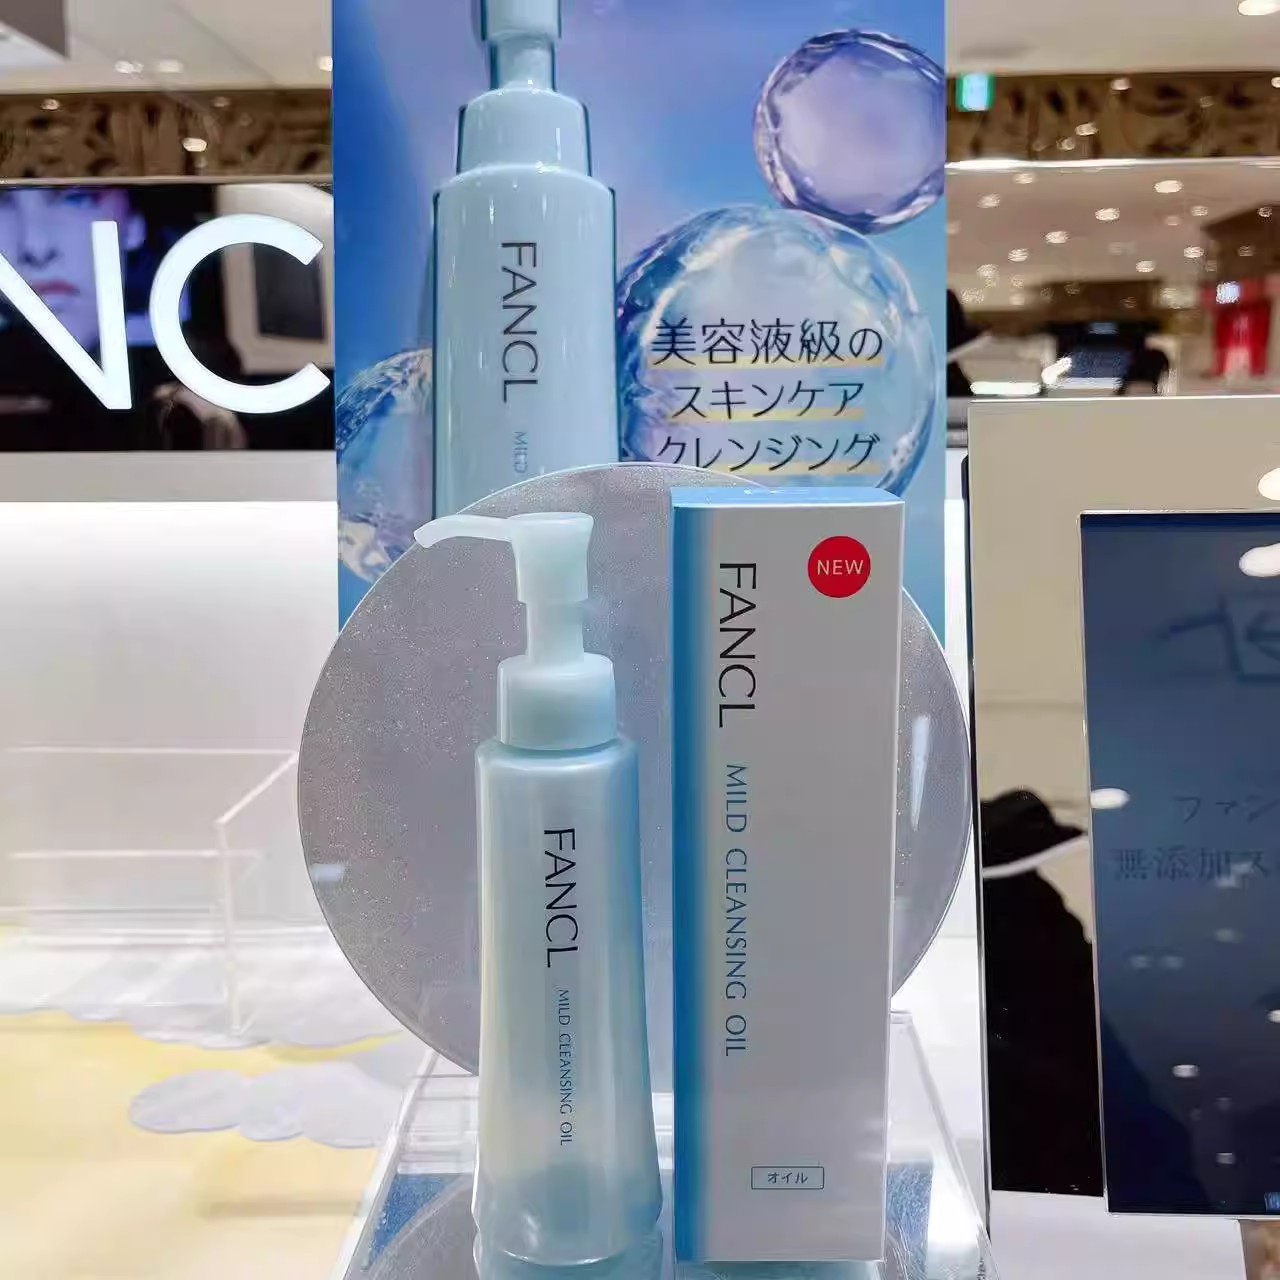 日本fancl芳珂无添加纳米净化卸妆油卸妆液120ML专柜版 孕妇可用